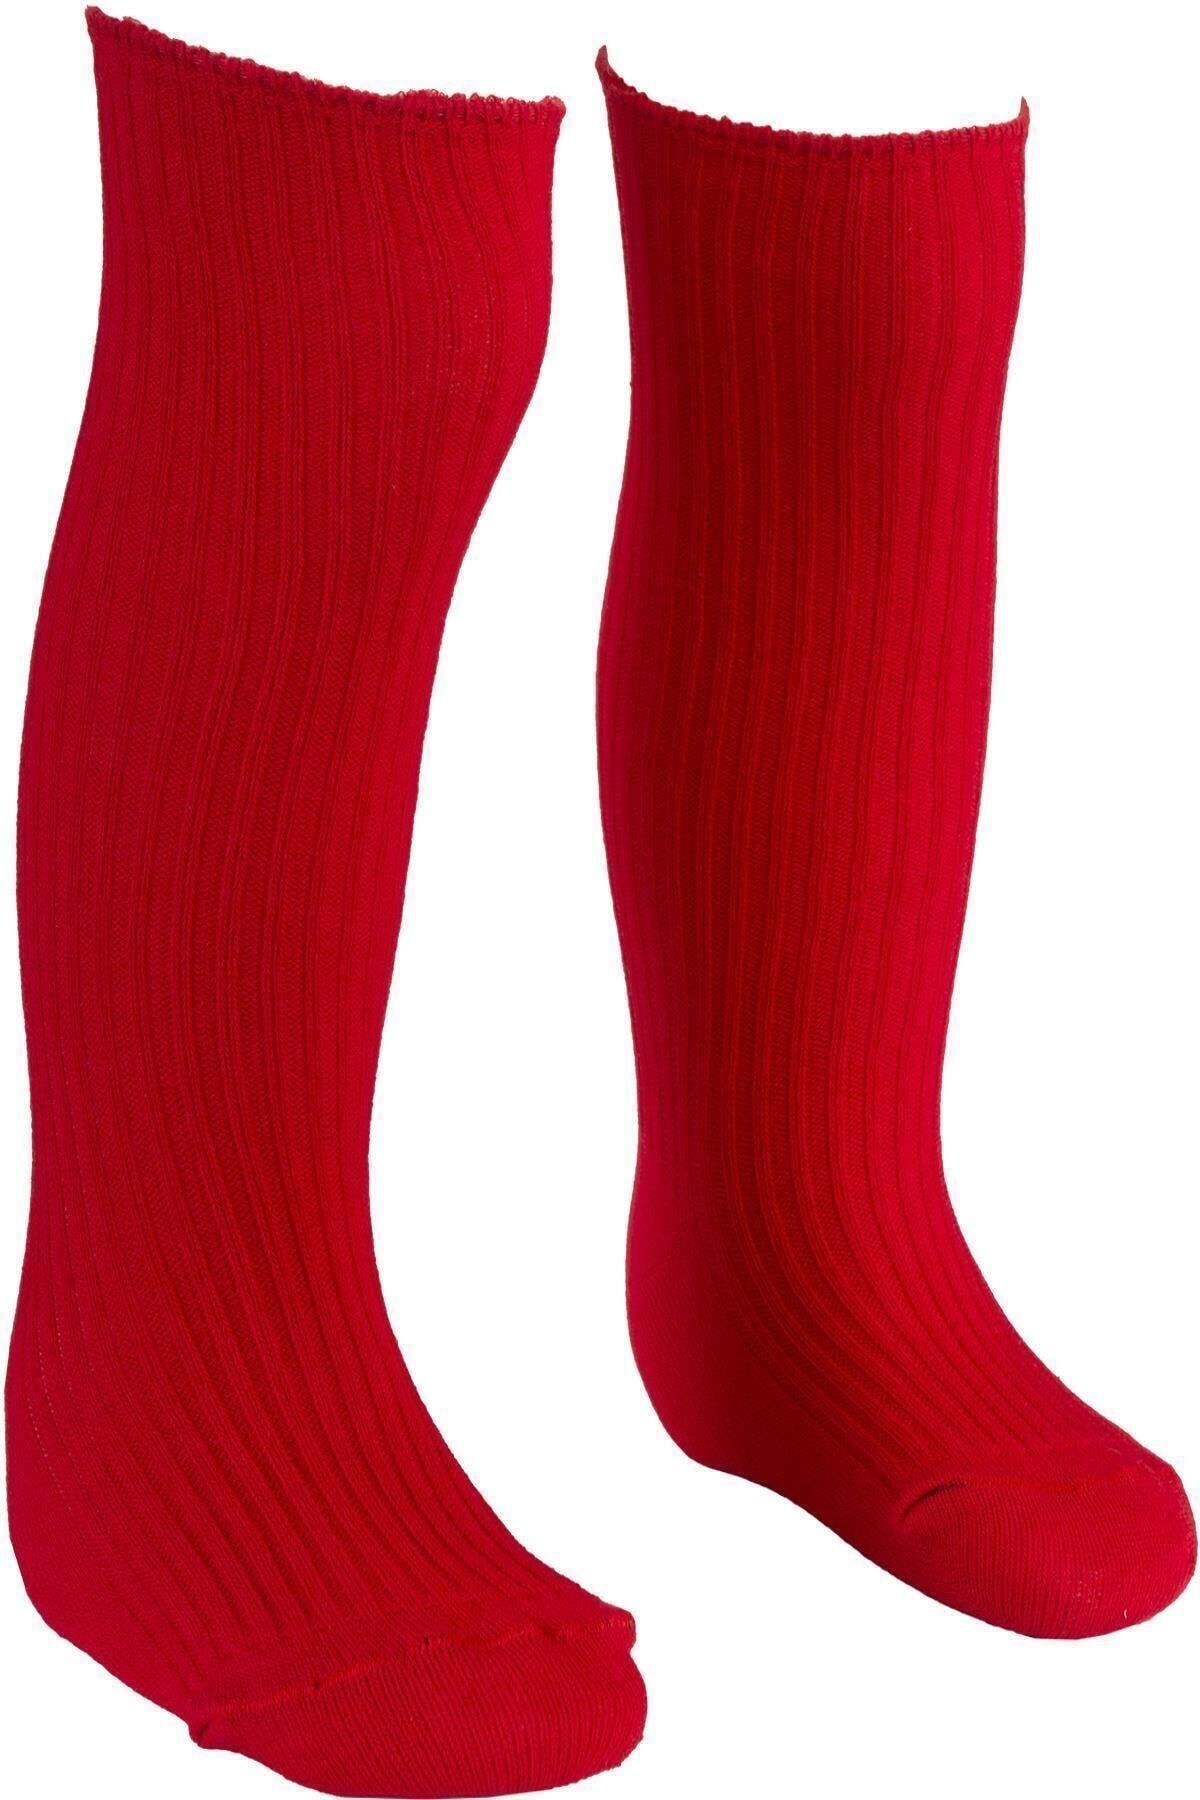 BEBEĞİME ÇORAP Kız Çocuk Kırmızı Derby Dizaltı Çorap